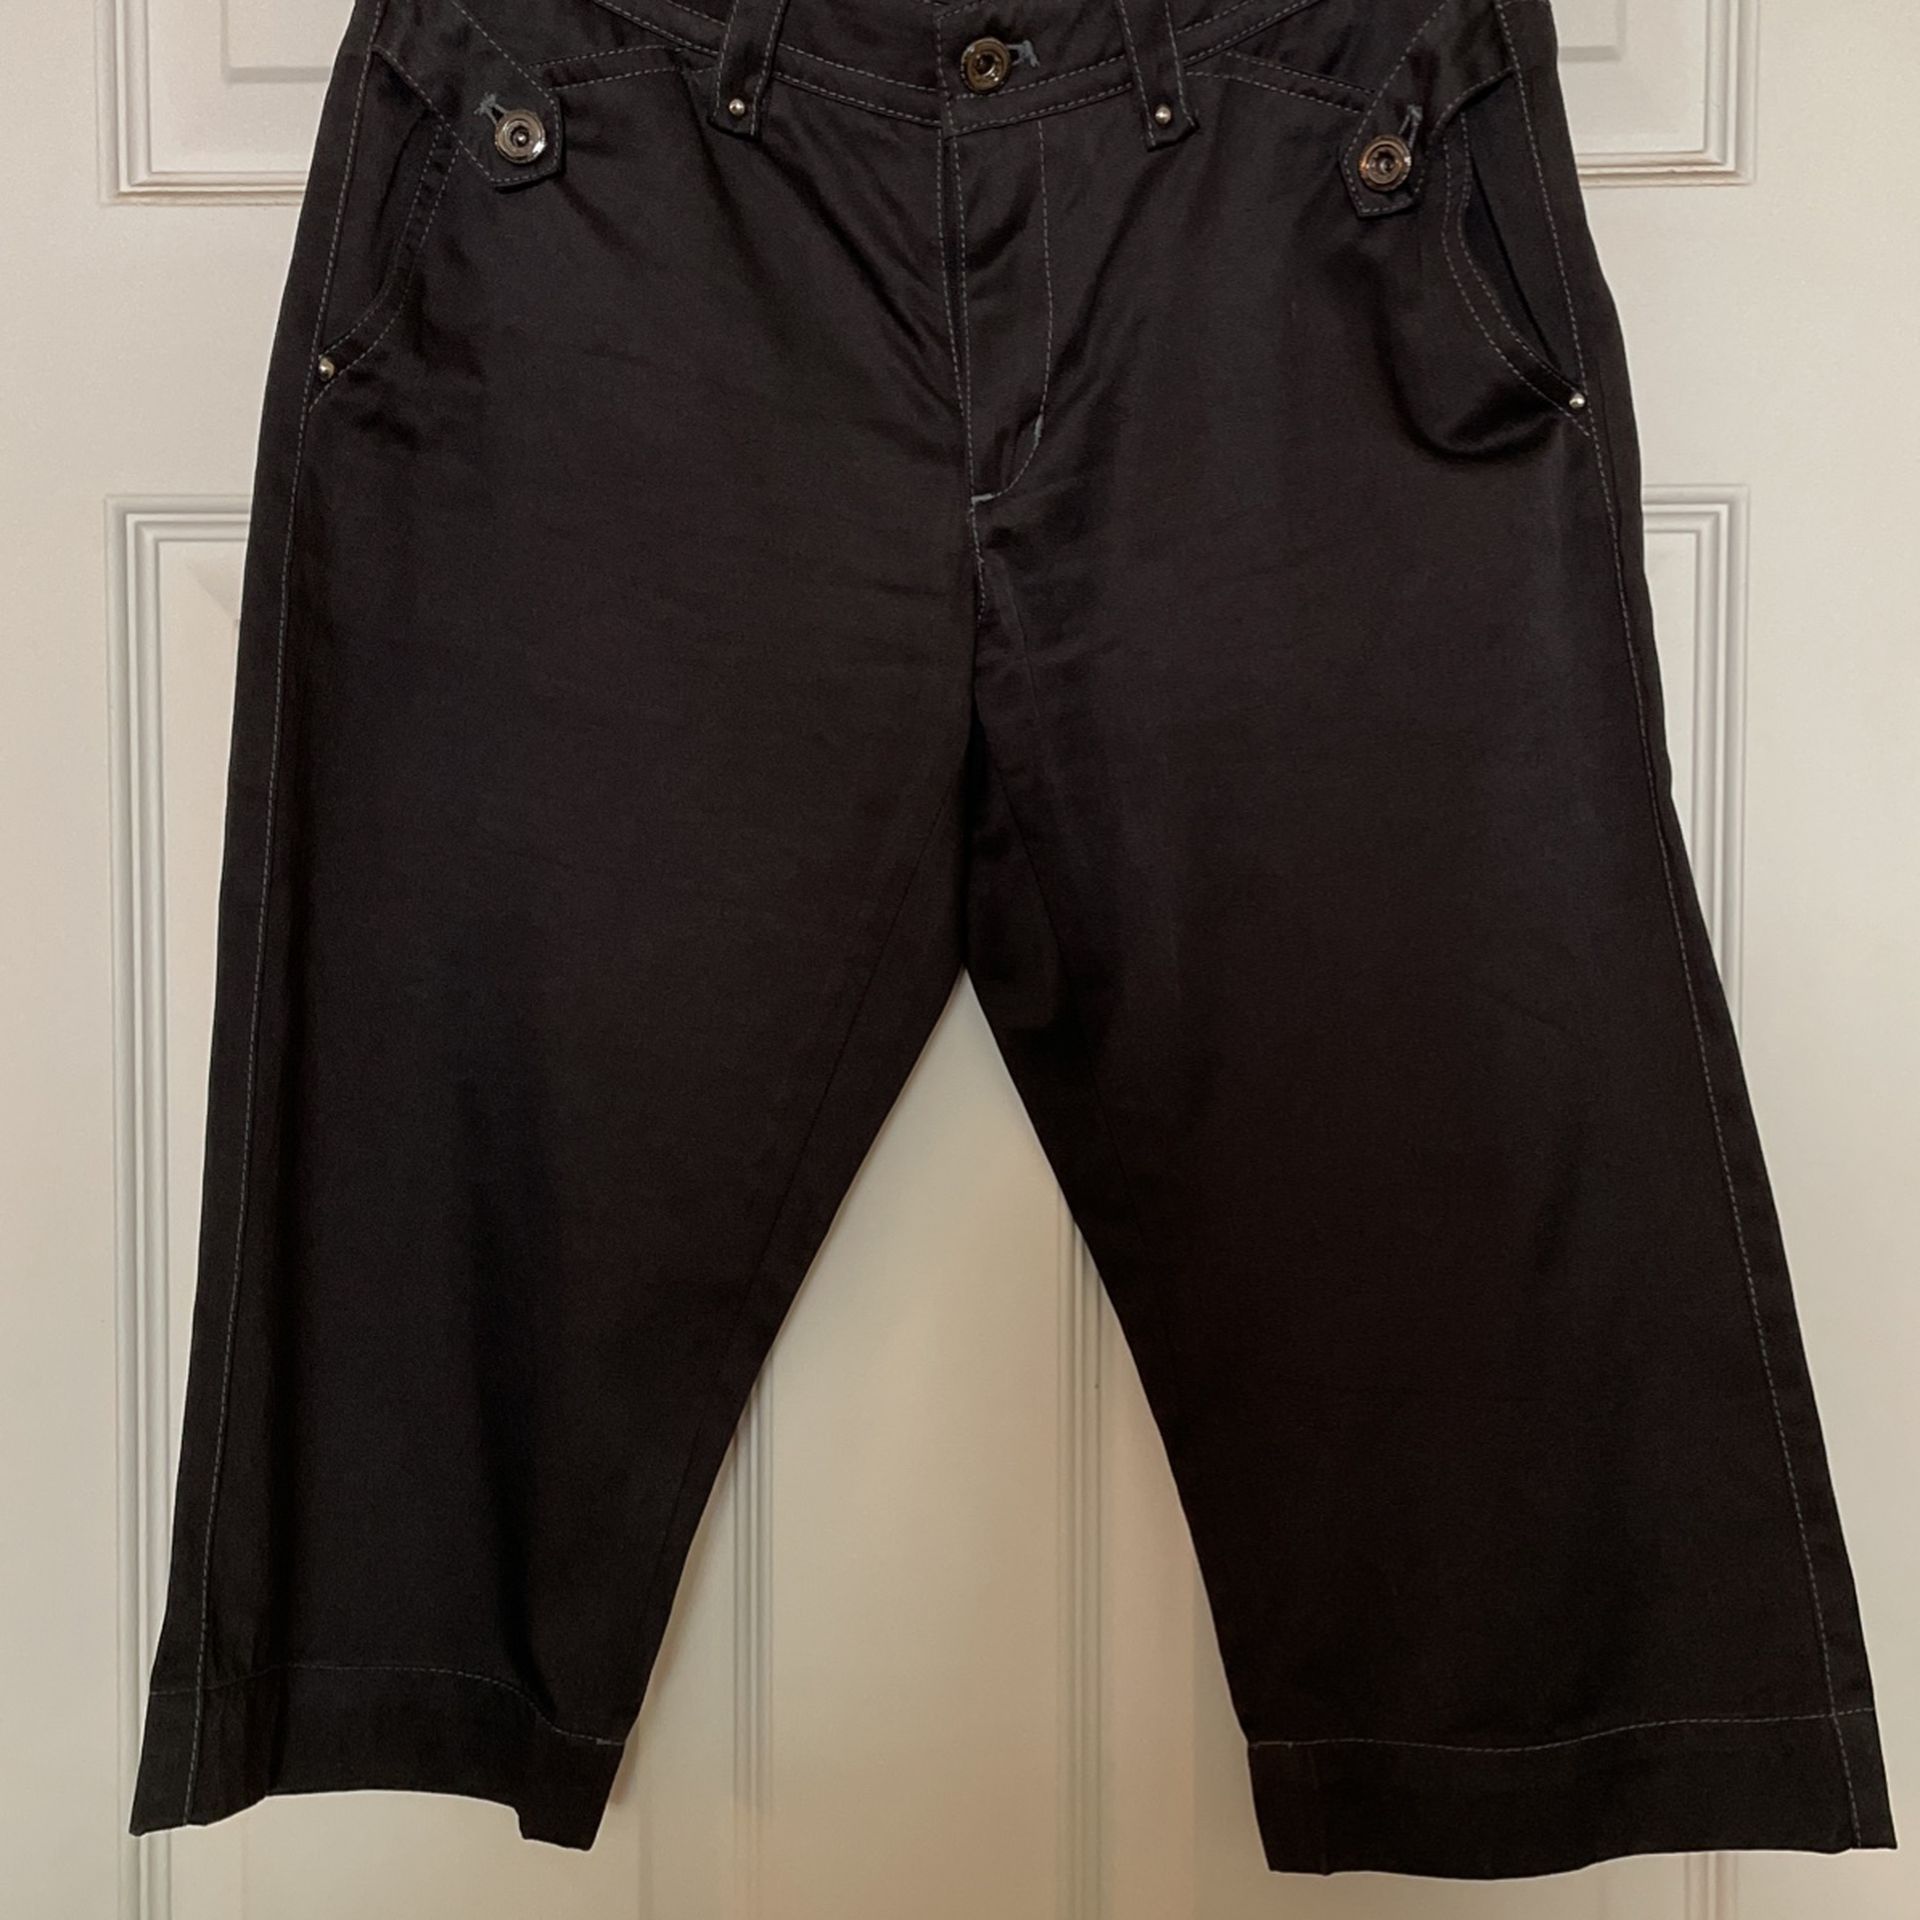 Black 3/4 Length Cotton Pants